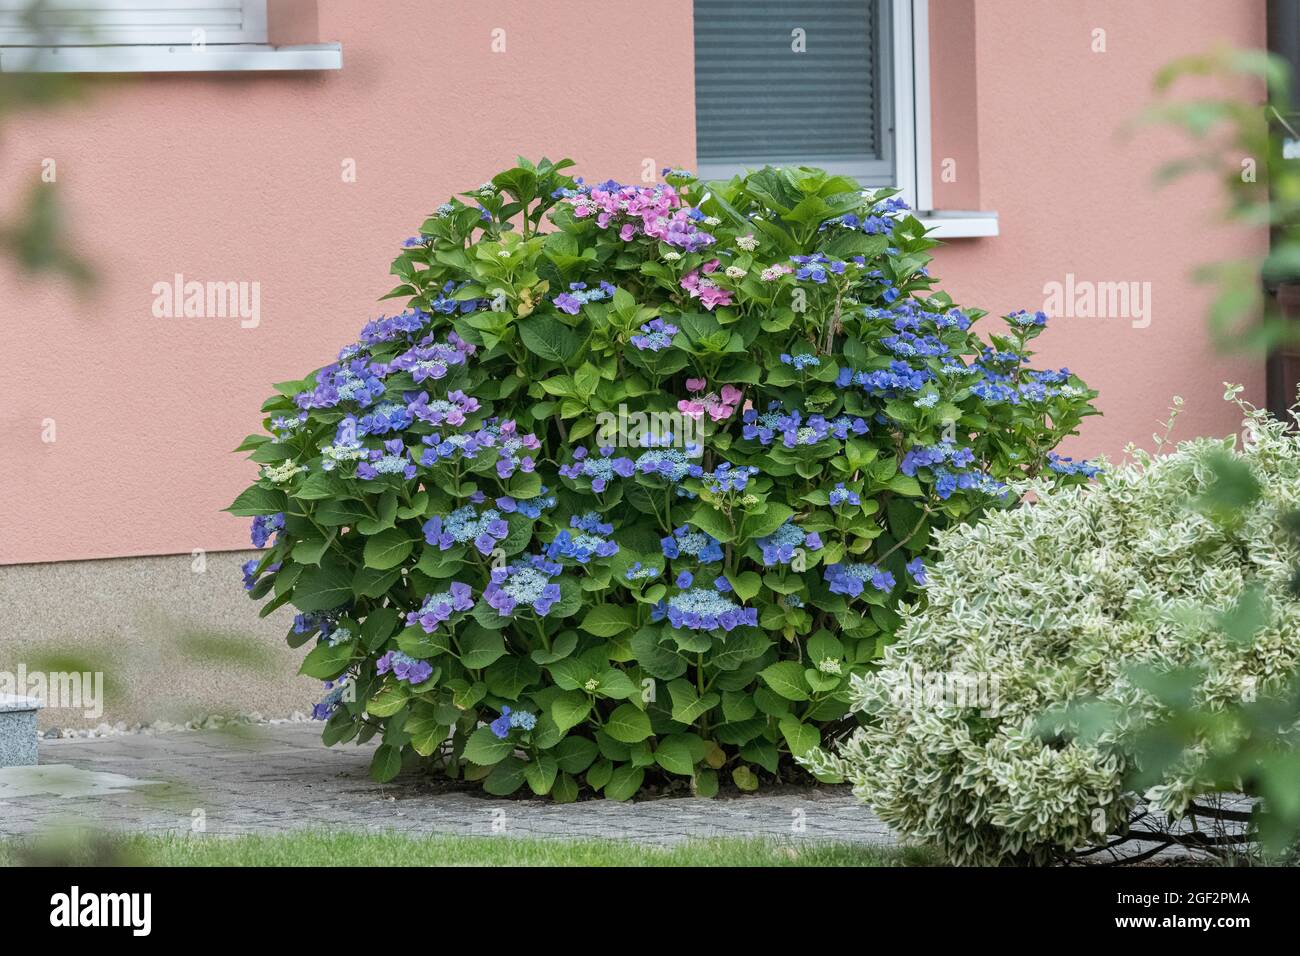 Hortensia de jardin, hortensia de chapeau de dentelle (Hydrangea macrophylla 'Blaumeise', Hydrangea macrophylla Blaumeise), cultivar de fleur Blaumeise Banque D'Images